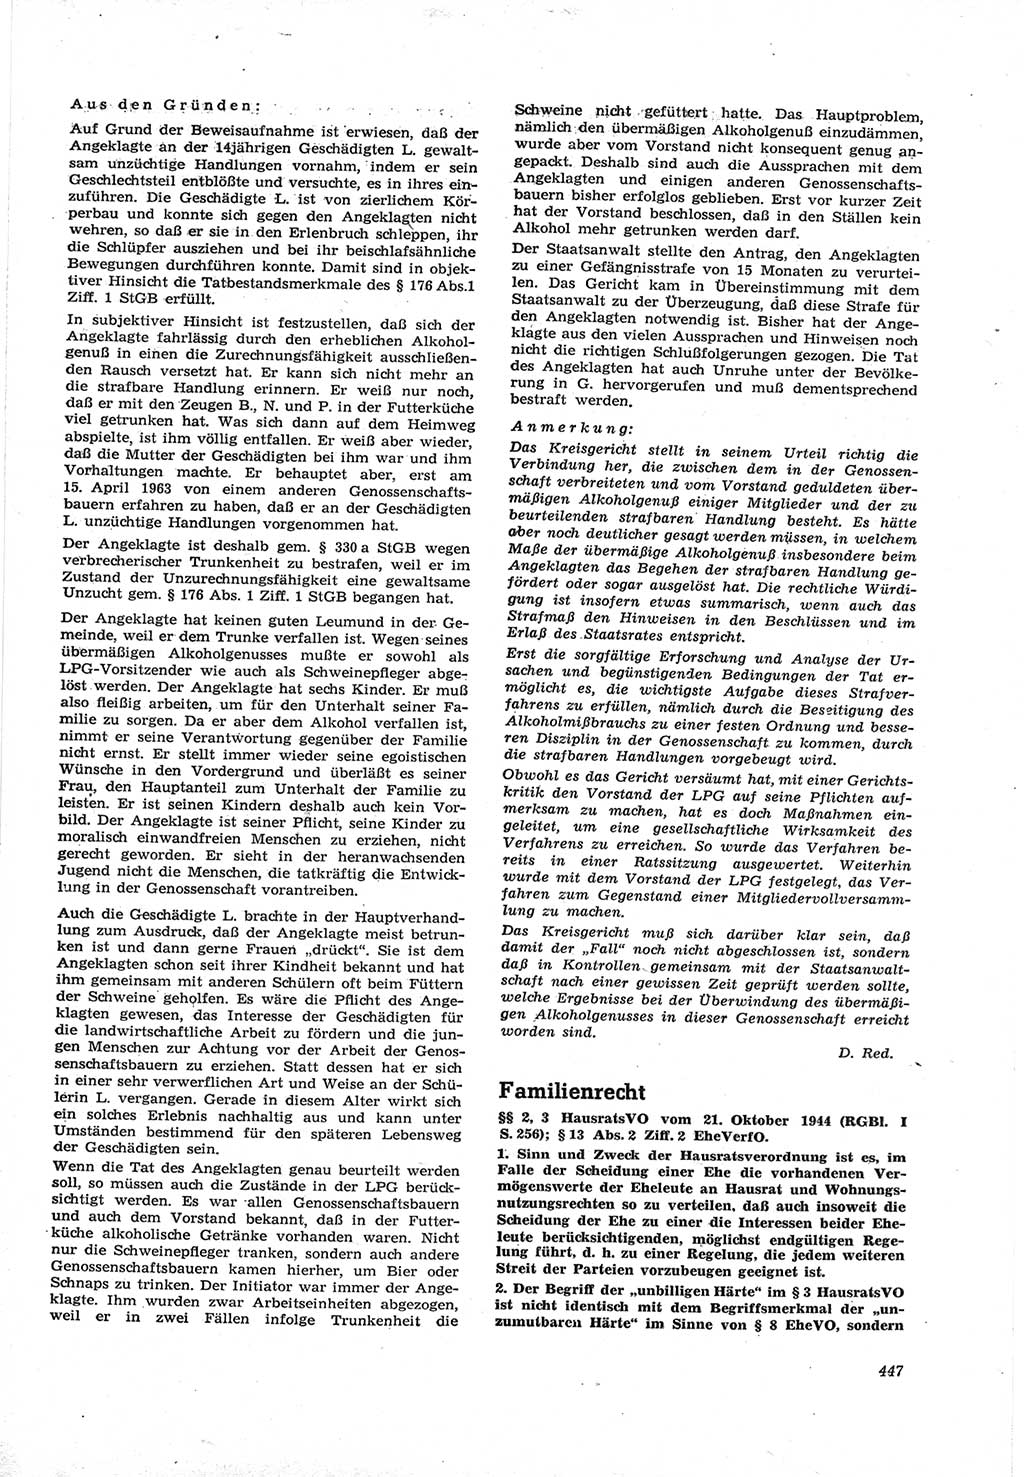 Neue Justiz (NJ), Zeitschrift für Recht und Rechtswissenschaft [Deutsche Demokratische Republik (DDR)], 17. Jahrgang 1963, Seite 447 (NJ DDR 1963, S. 447)